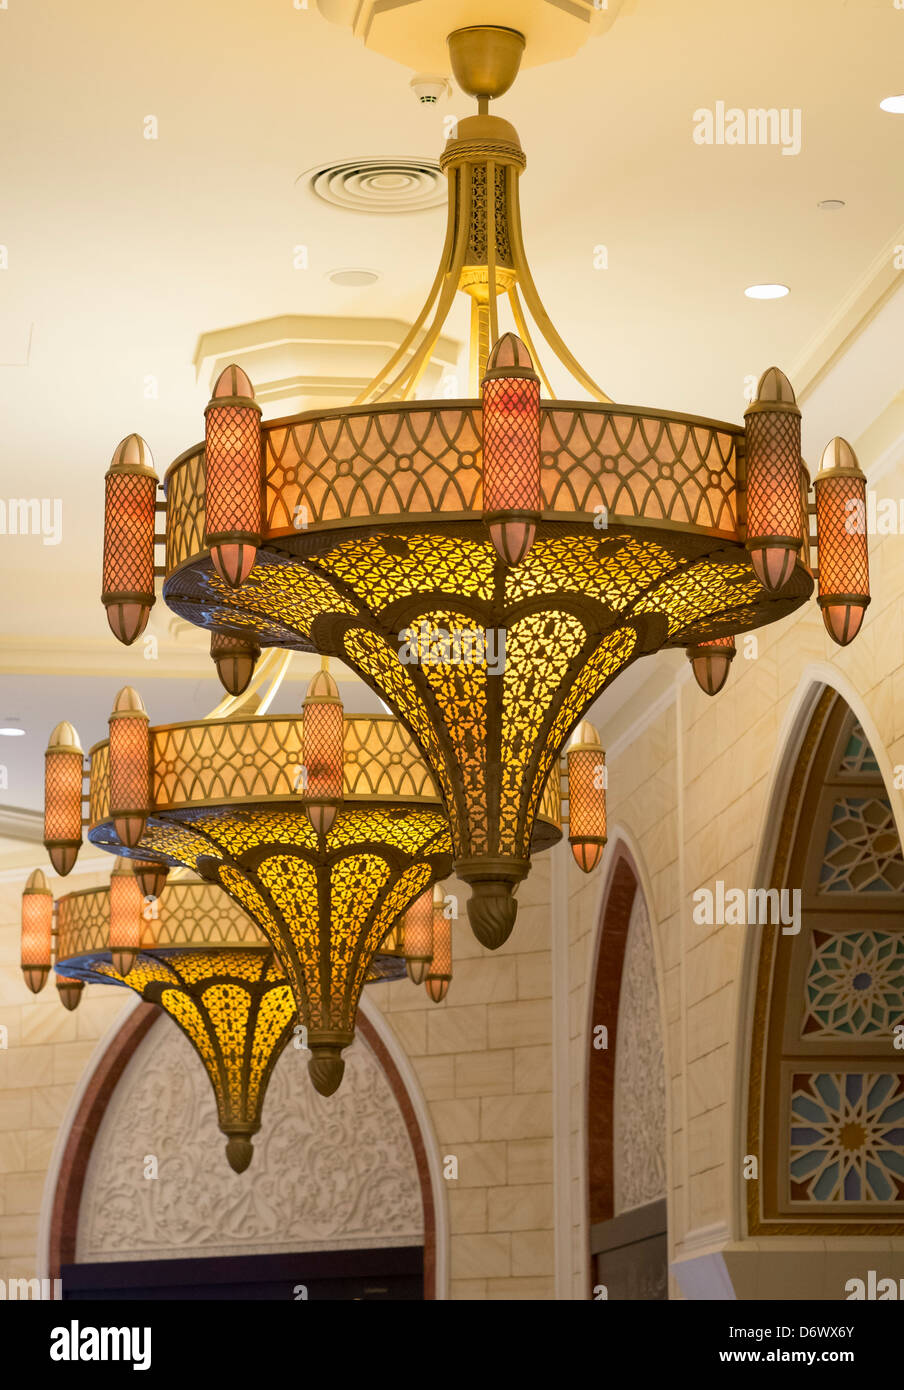 Dettagli dal Souk all'interno del centro commerciale di Dubai negli Emirati Arabi Uniti EMIRATI ARABI UNITI Foto Stock